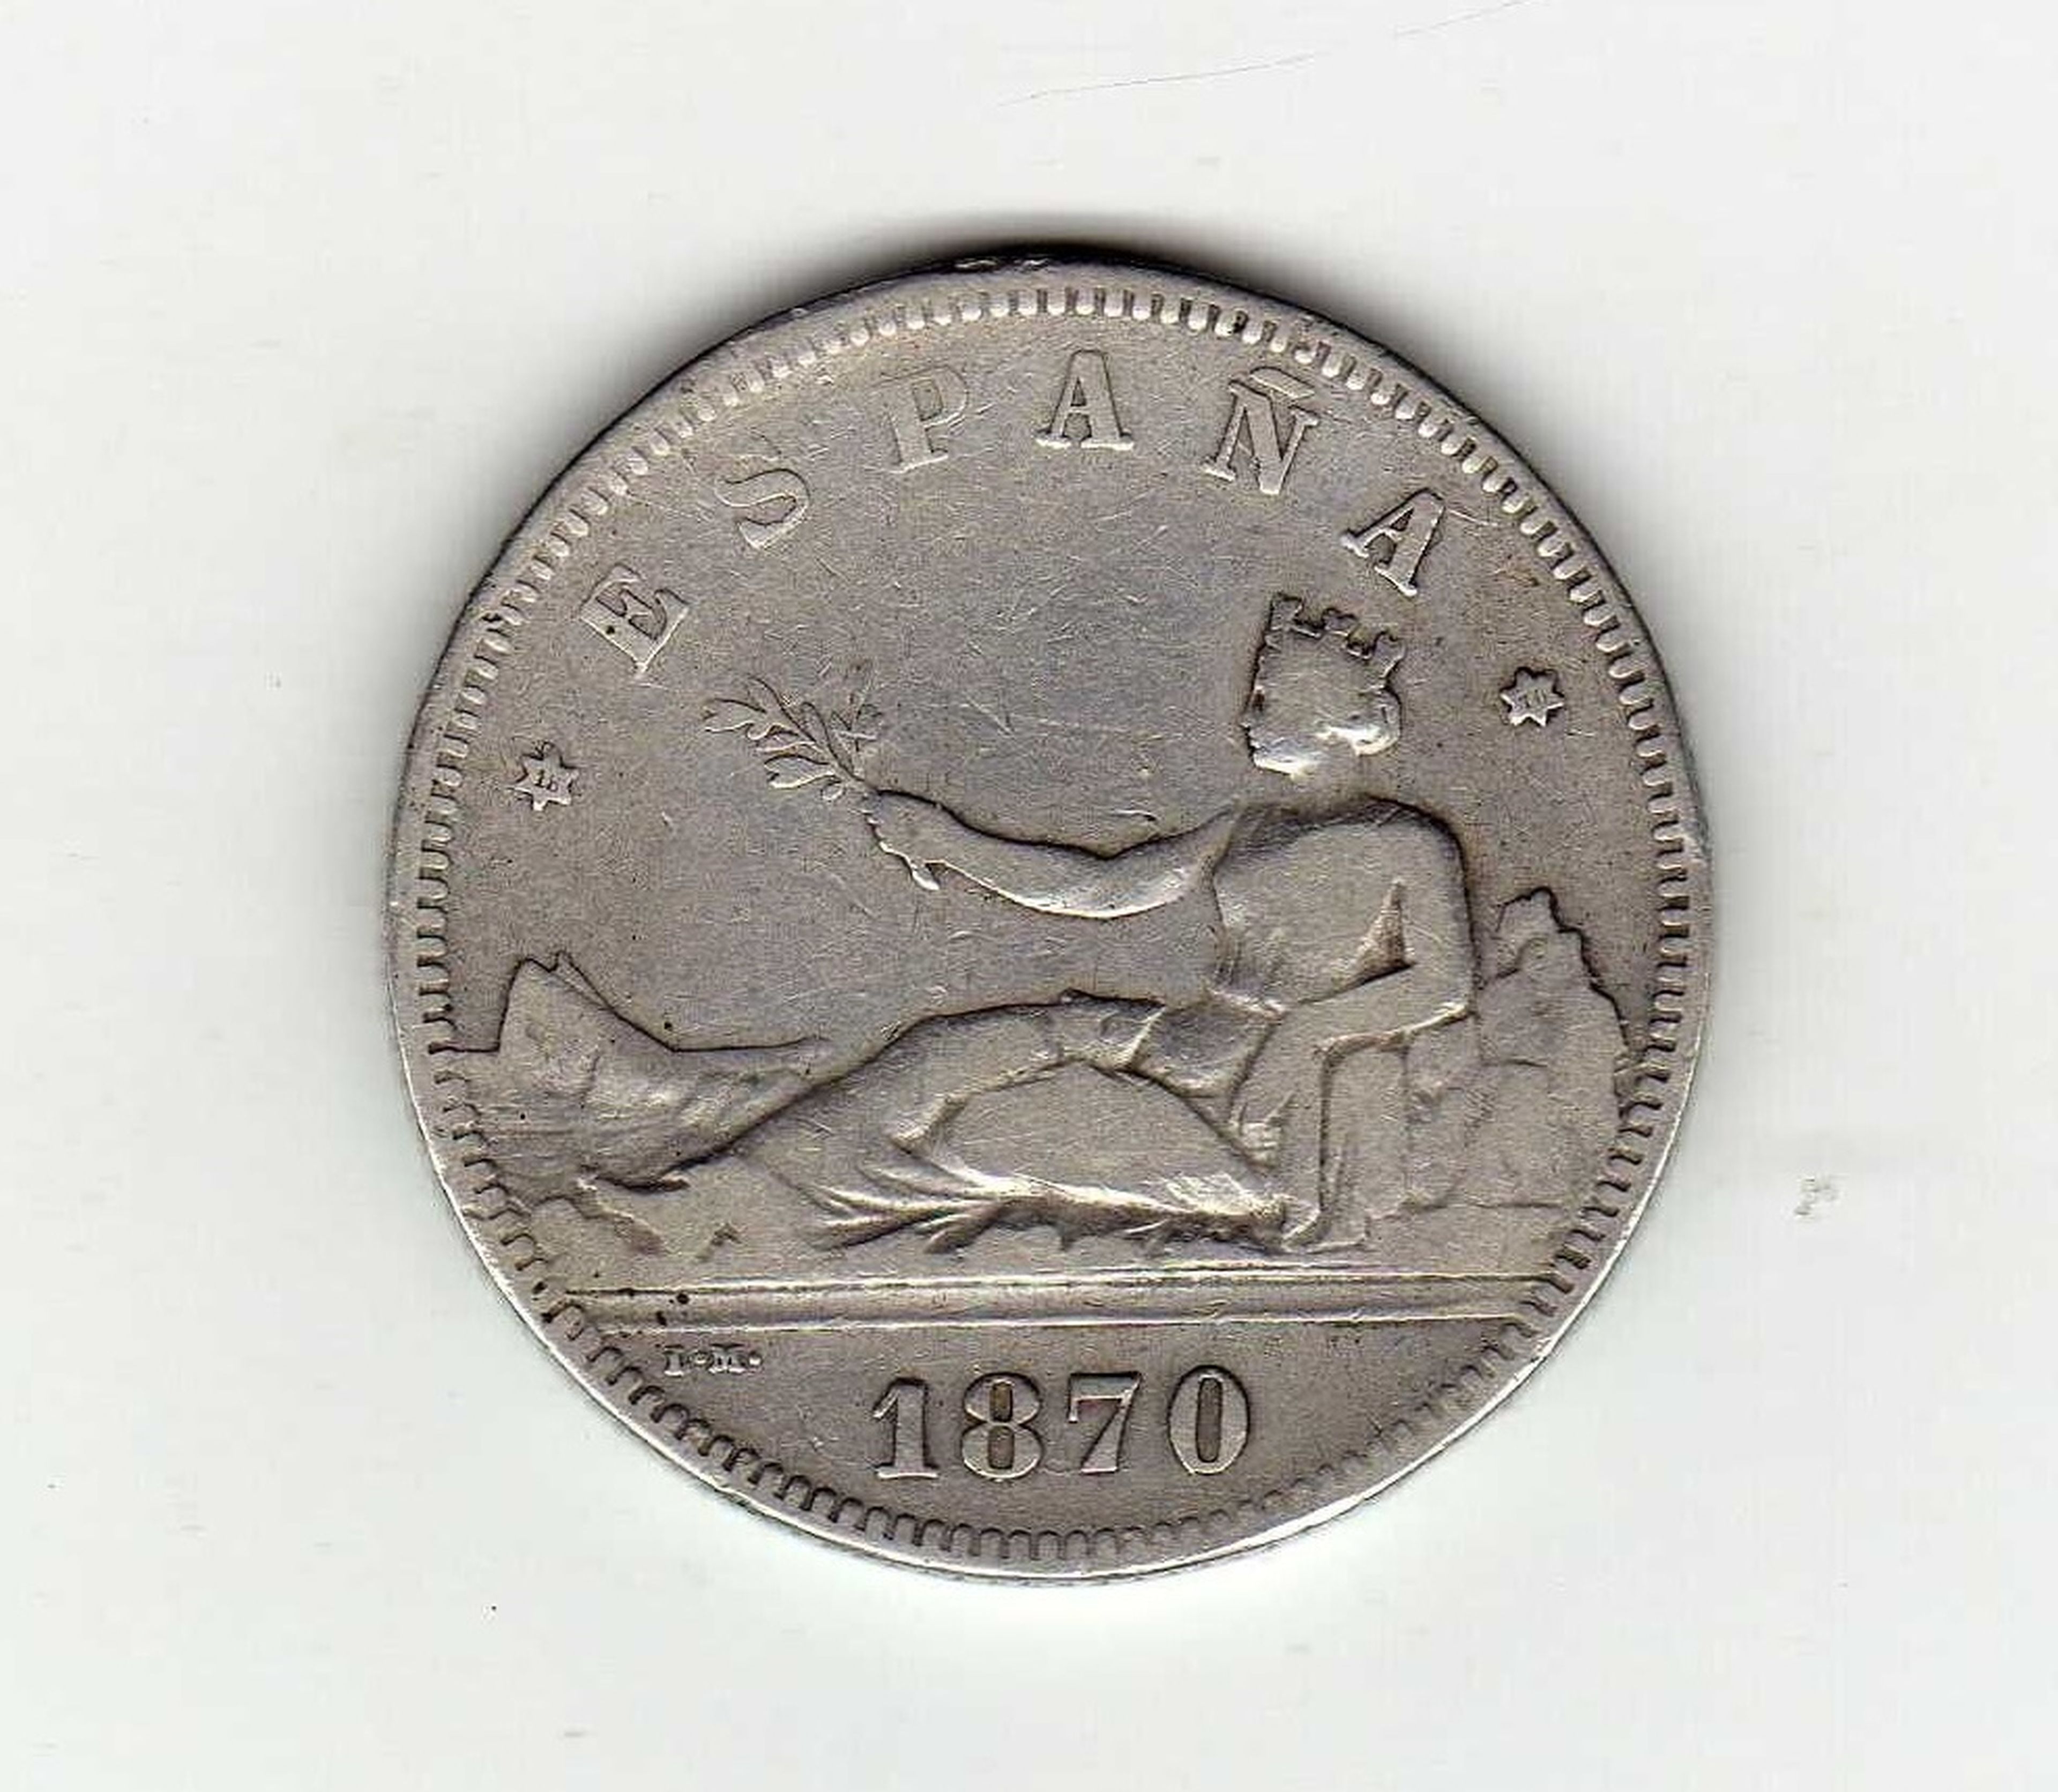 Moneda de 2 pesetas de 1870